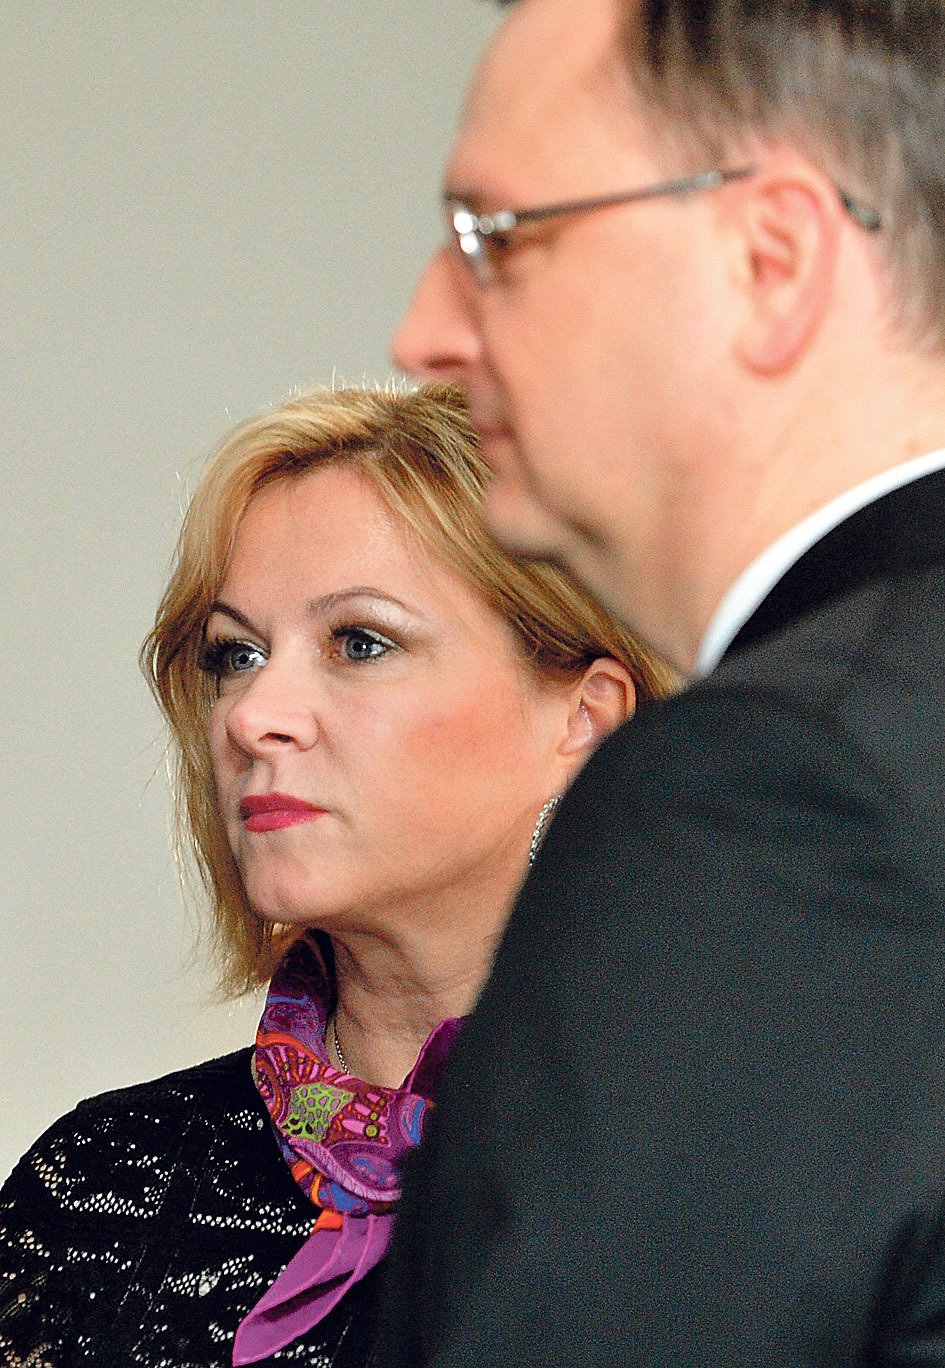 Premiér a Jana Nagyová k sobě mají blízko